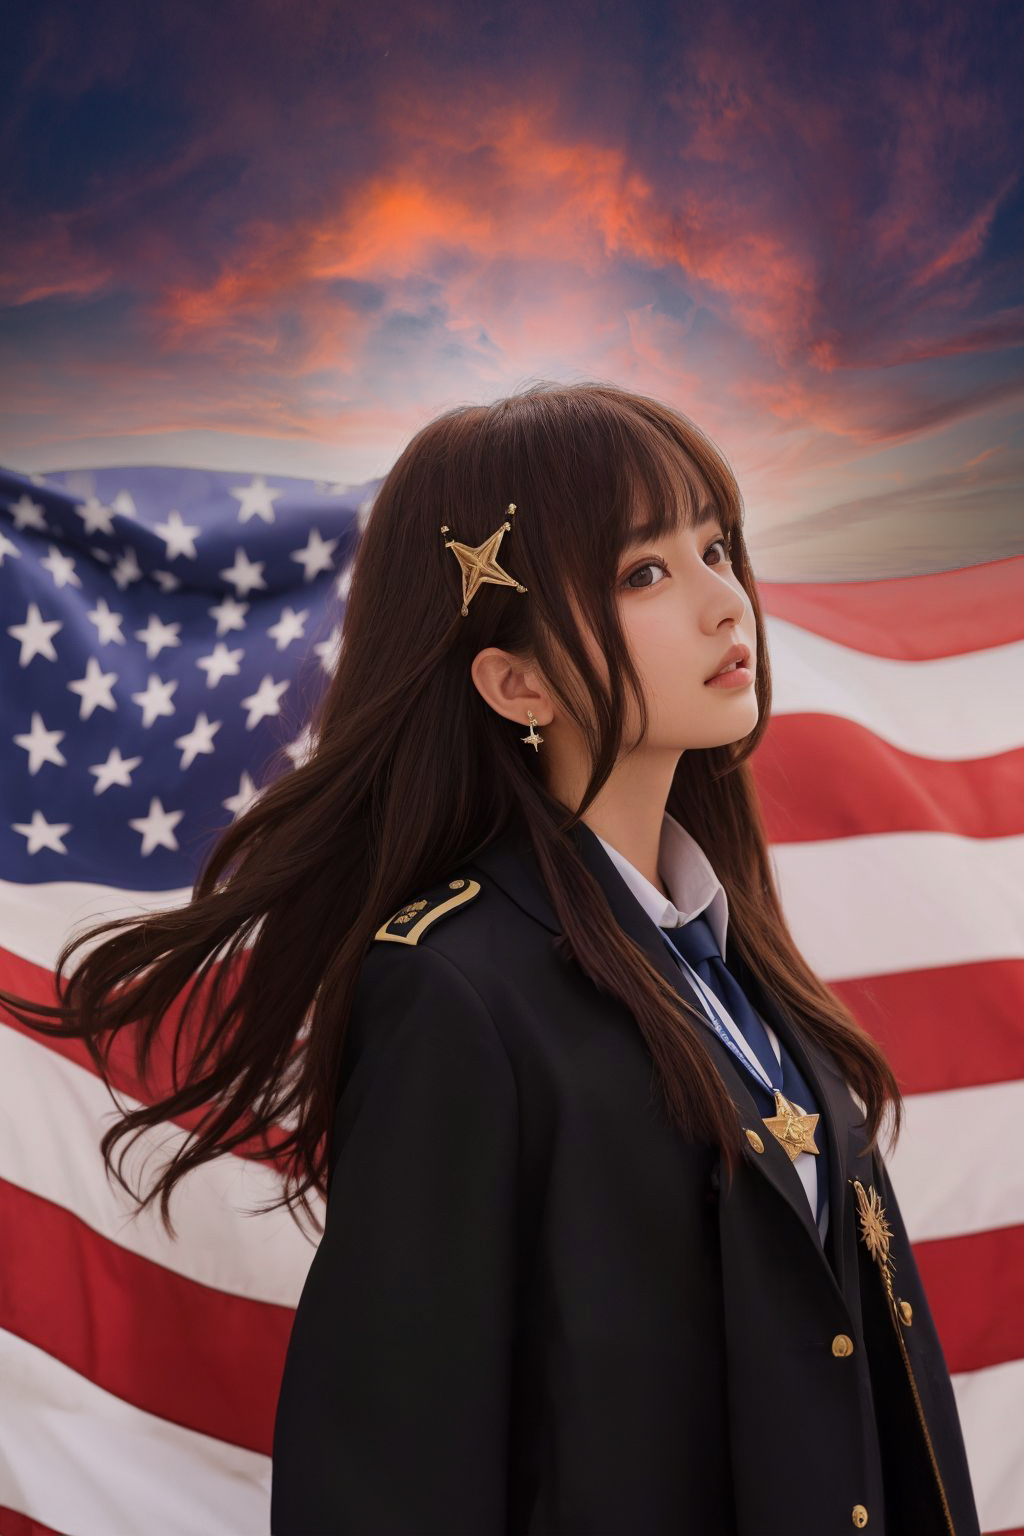 星条旗 / the American flag